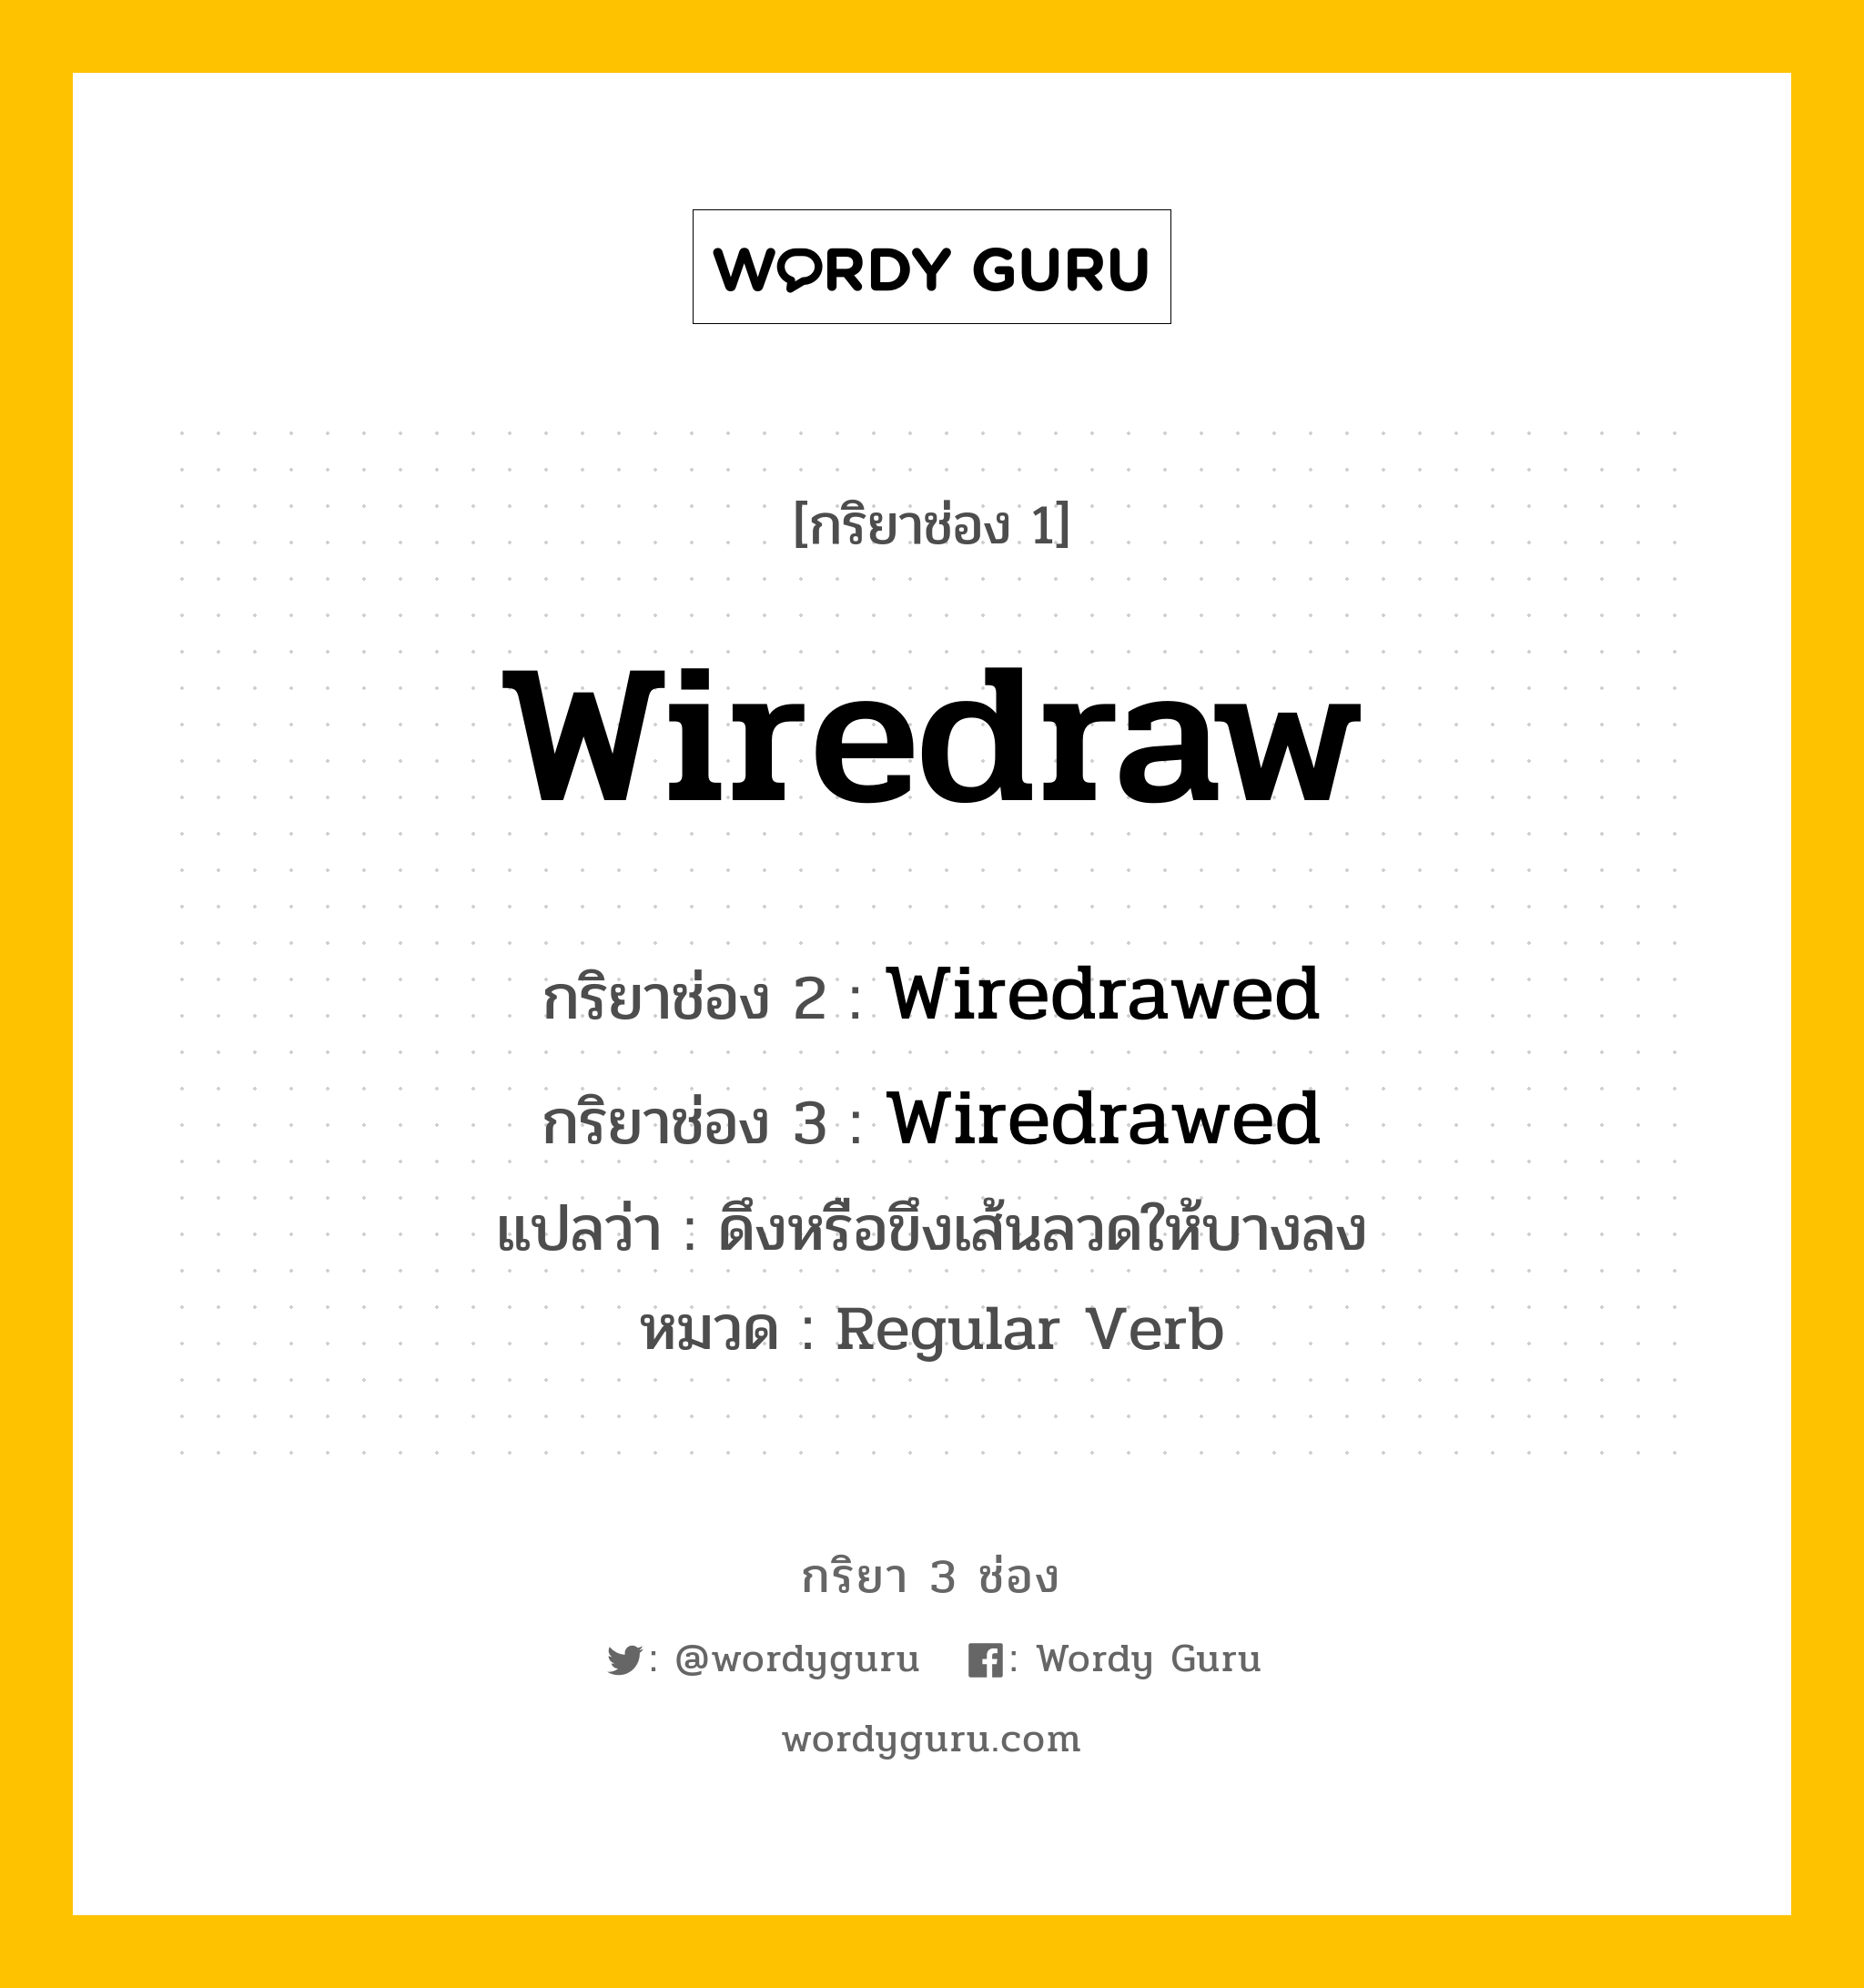 กริยา 3 ช่อง ของ Wiredraw คืออะไร? มาดูคำอ่าน คำแปลกันเลย, กริยาช่อง 1 Wiredraw กริยาช่อง 2 Wiredrawed กริยาช่อง 3 Wiredrawed แปลว่า ดึงหรือขึงเส้นลวดให้บางลง หมวด Regular Verb หมวด Regular Verb